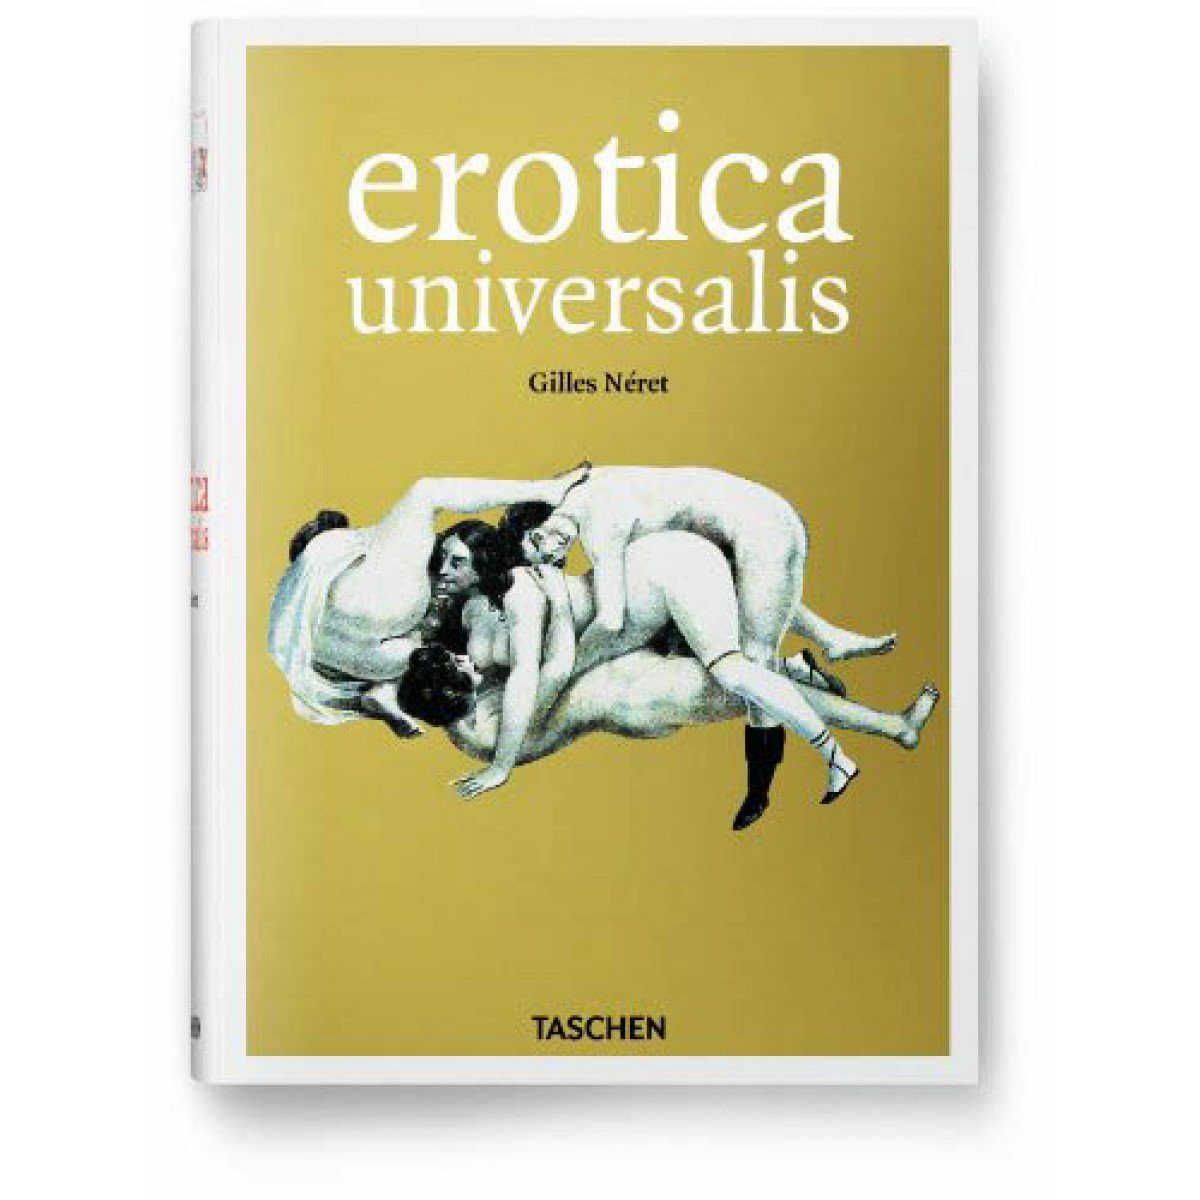 best of Gilles Erotica neret universalis